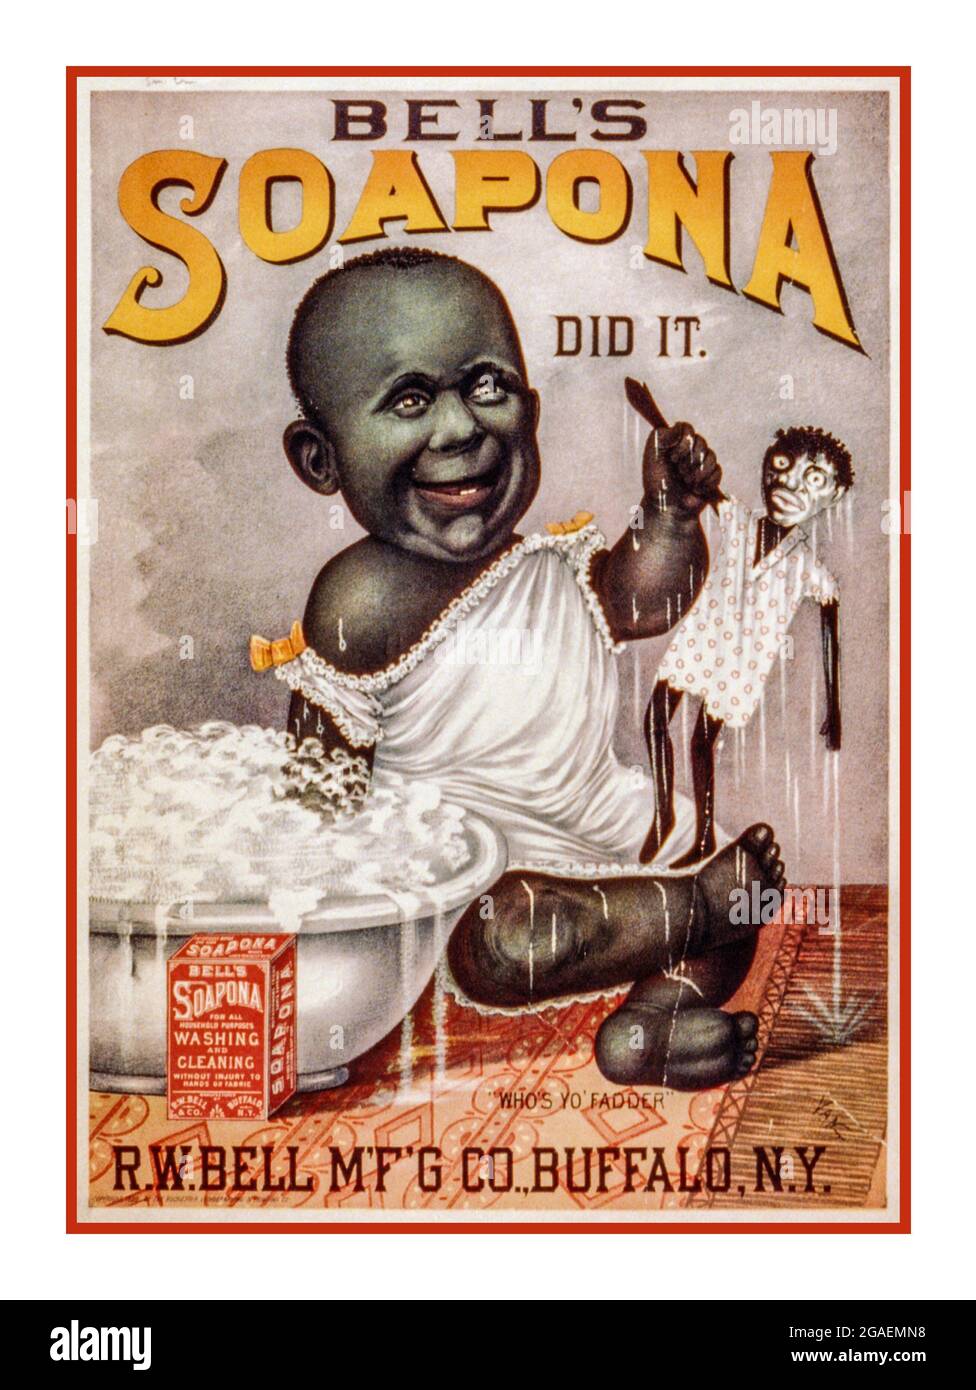 RASSISTISCHE Non-PC Vintage American Advertisement für Soapona 'Bell's Soapona hat es getan--' c1889. Rassistische, nicht politkal korrekte (Poster-)Werbung : Lithographie, Farbe. Werbung (nicht PC) für Bells Soapona-Seife, die zeigt, dass afroamerikanisches Baby eine nasse Puppe hochhält, deren schwarzes Gesicht mit Hilfe von Soapona halb weiß gewaschen wurde. Ein rassistischer Stereotyp für Weiß ist eine bessere Farbe... Stockfoto